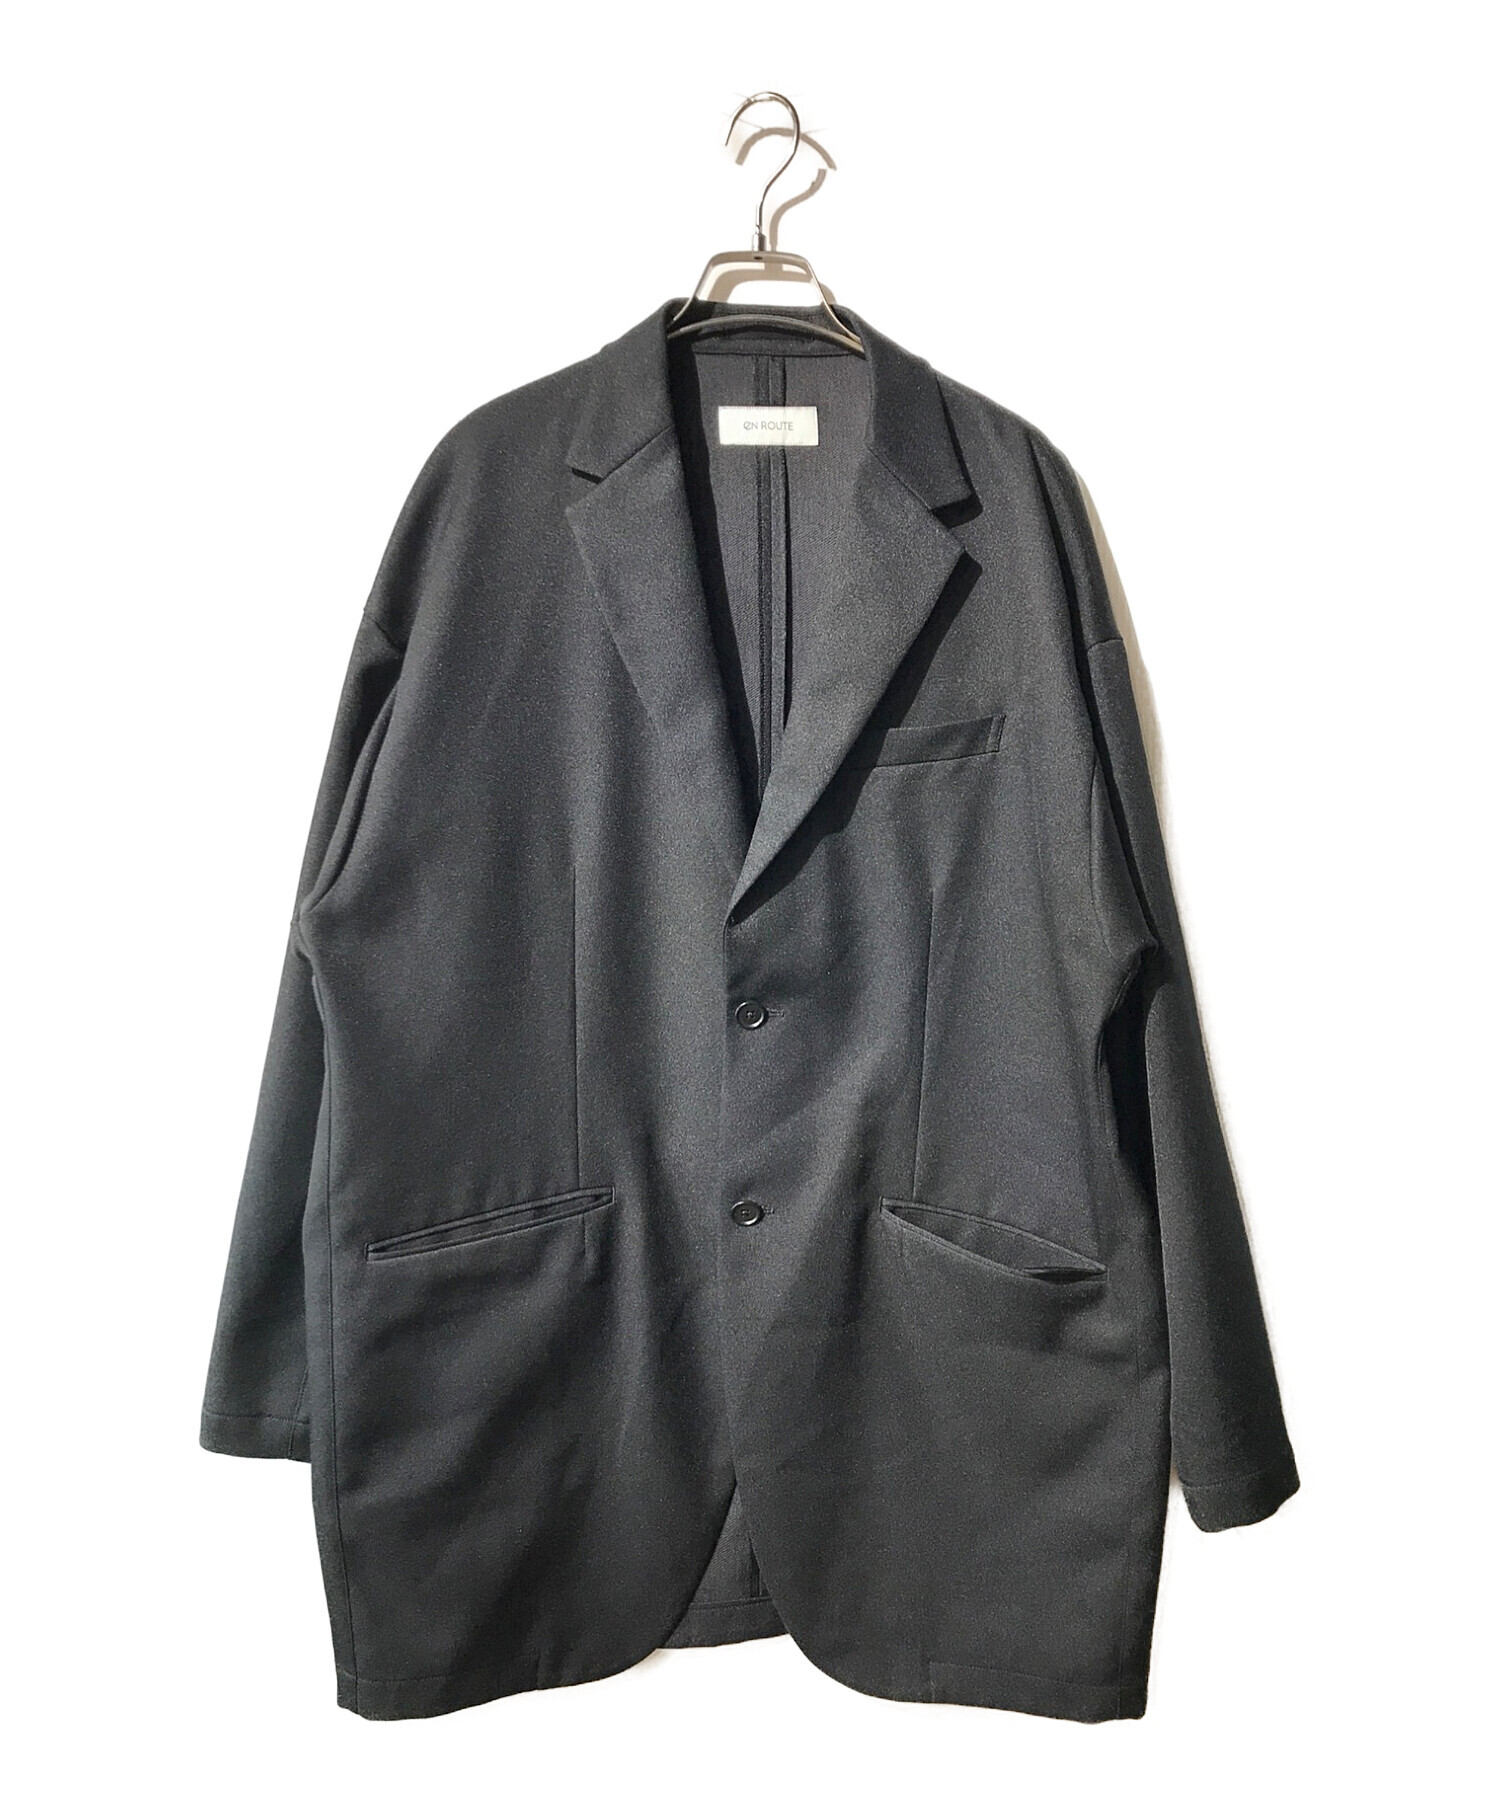 EN ROUTE (アンルート) エステルコットン2ボタンビッグジャケット ブラック サイズ:3